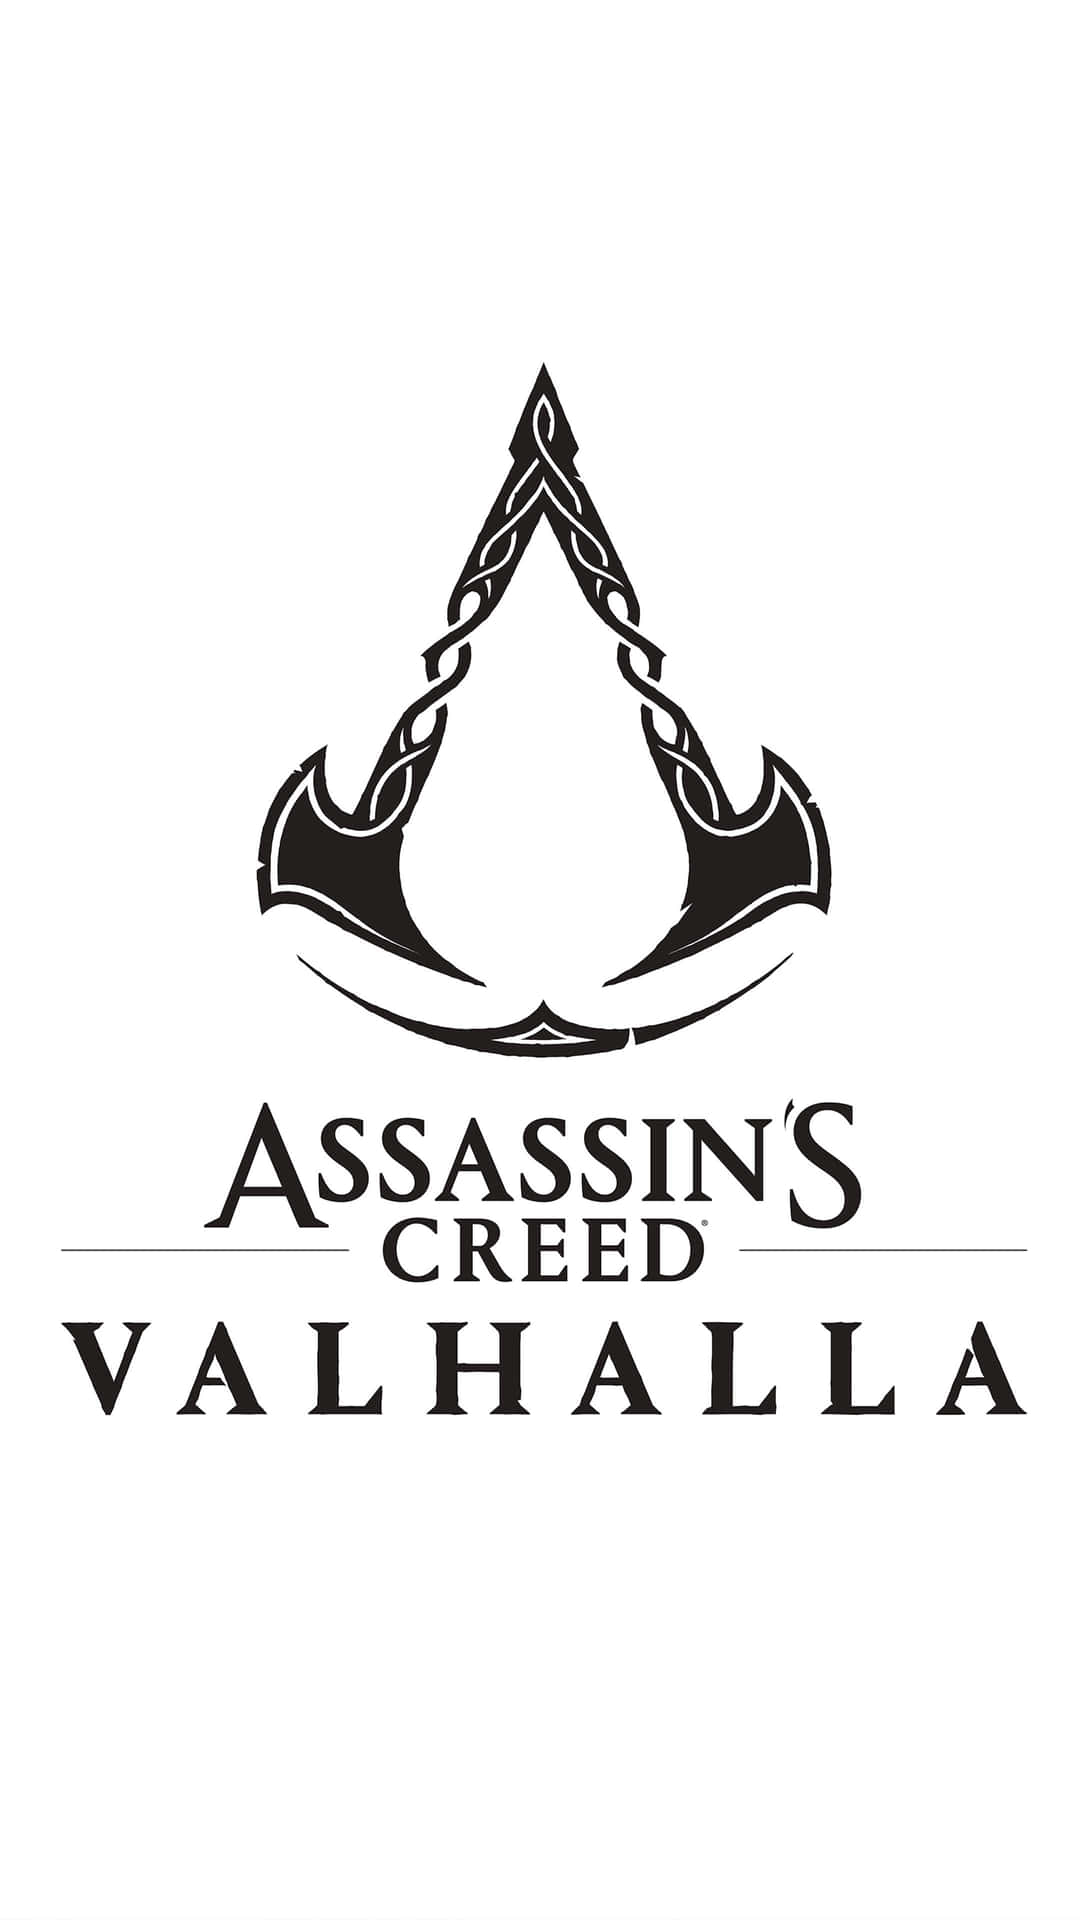 4kbakgrundsbild För Assassin's Creed Valhalla-speltecknet.